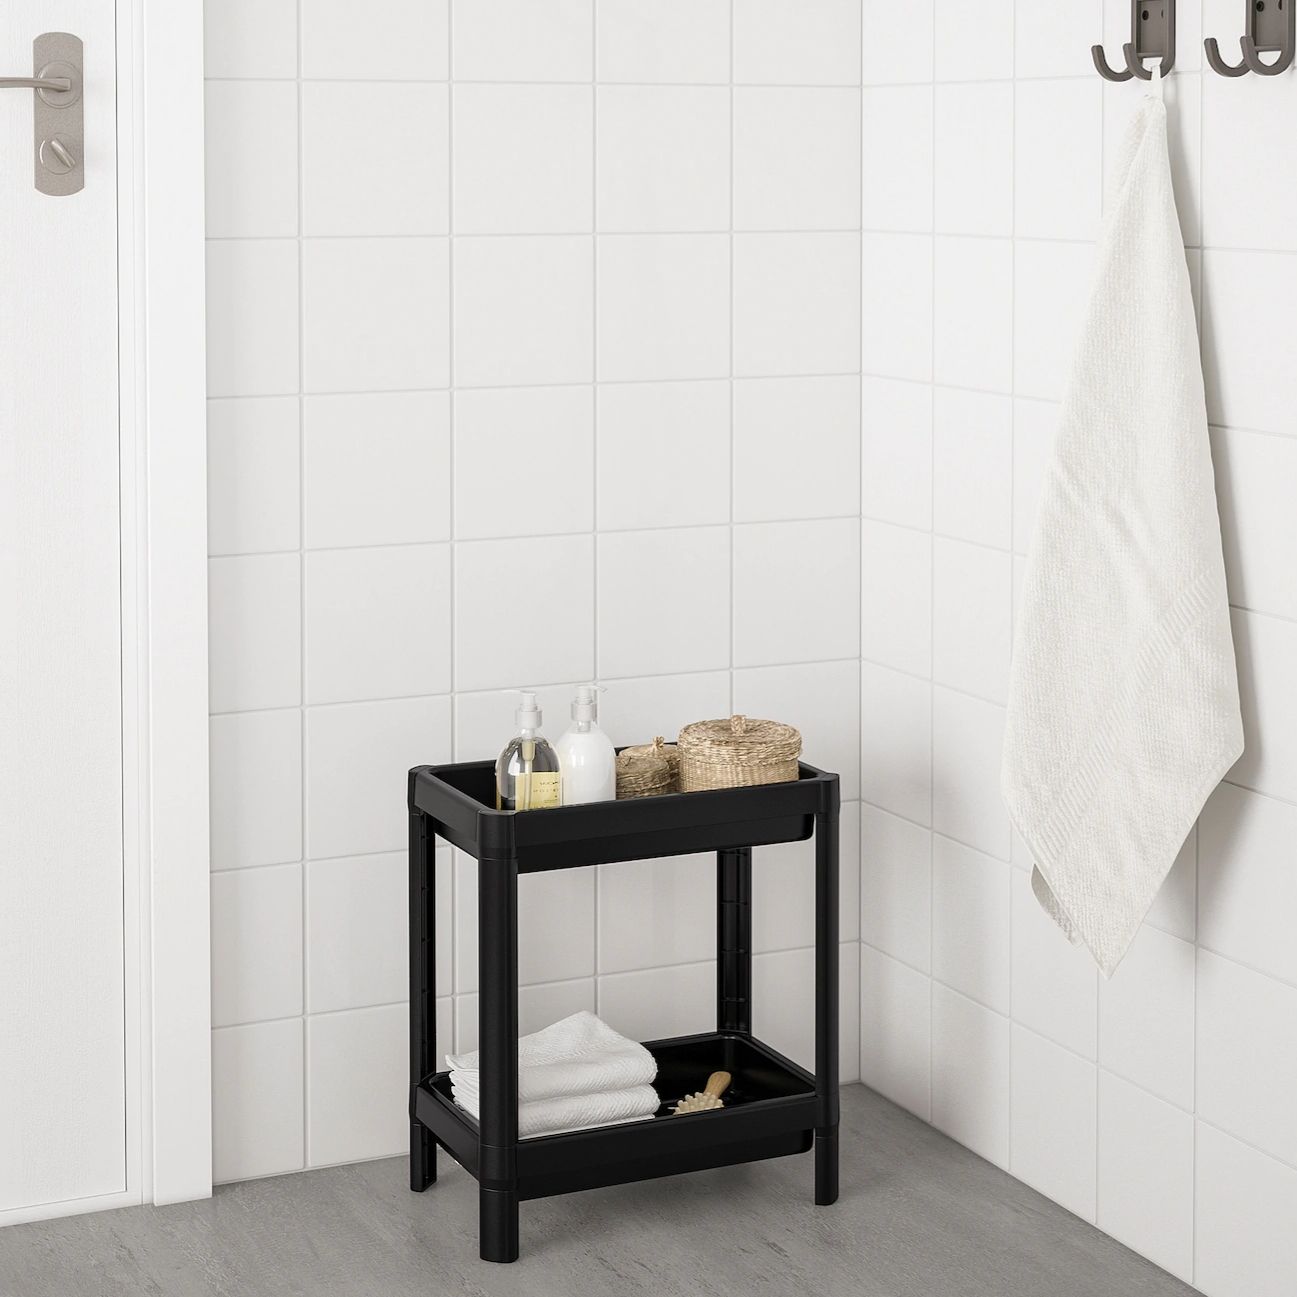 قفسه (شلف) حمام ایکیا 4 طبقه مدل VESKEN IKEA رنگ مشکی کد 304.508.07